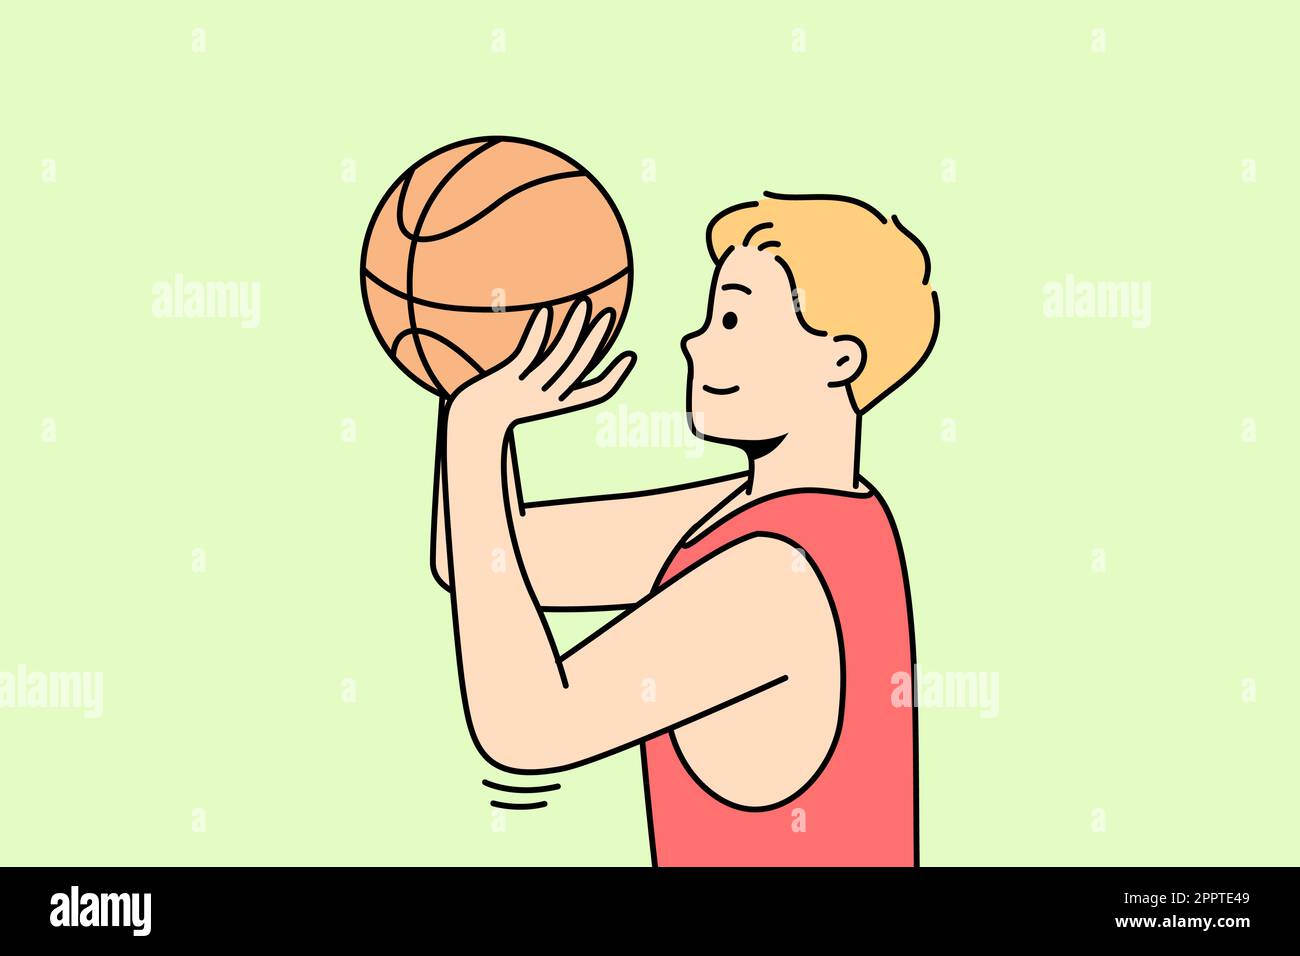 Sportsman throws ball into hoop or through net. Stock Vector